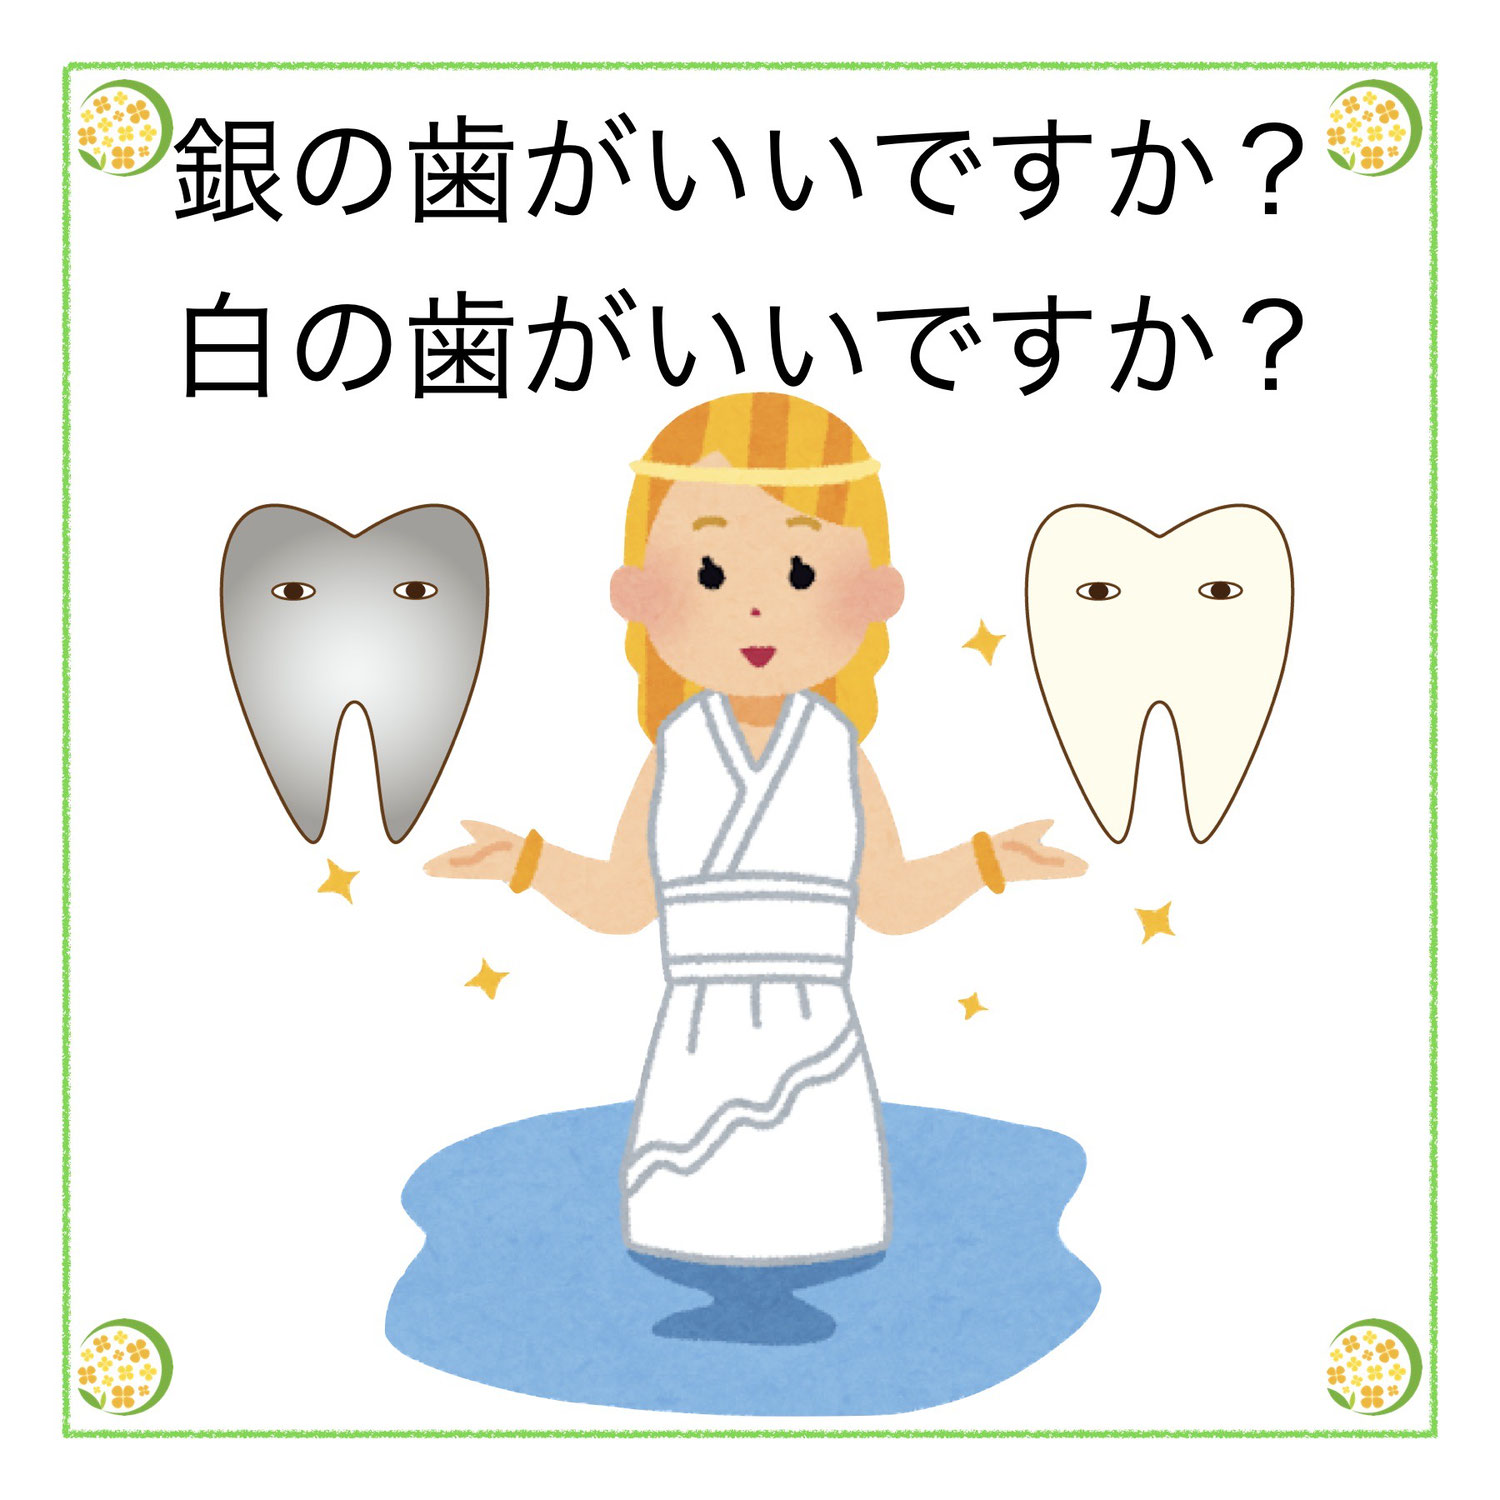 銀の歯がいいですか？白の歯がいいですか？